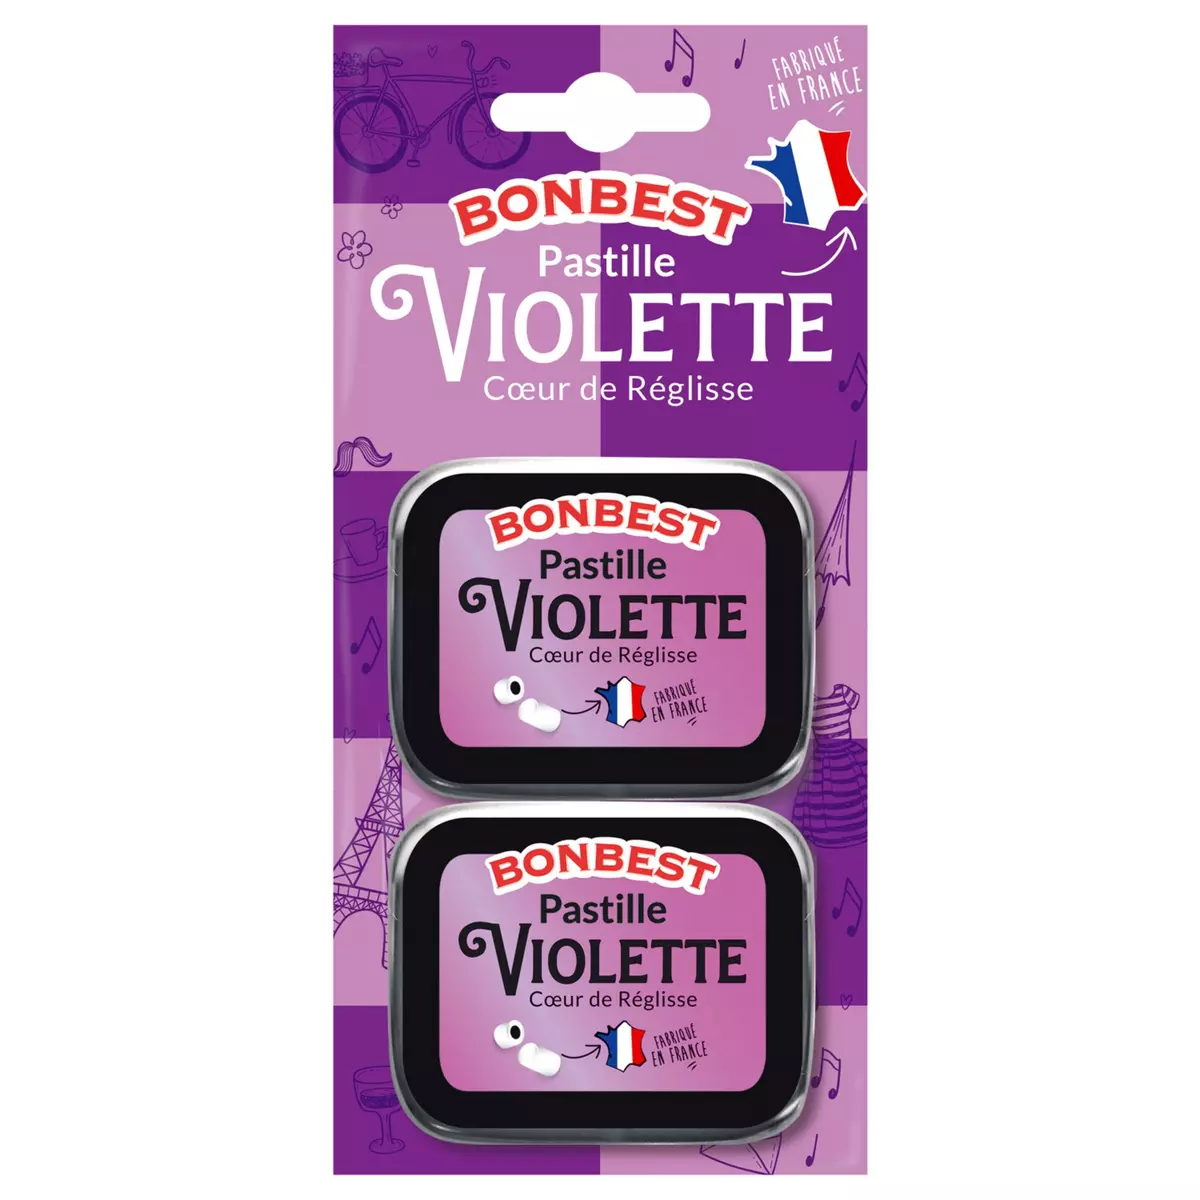 BONBEST Pastille violette coeur de réglisse 2x16g